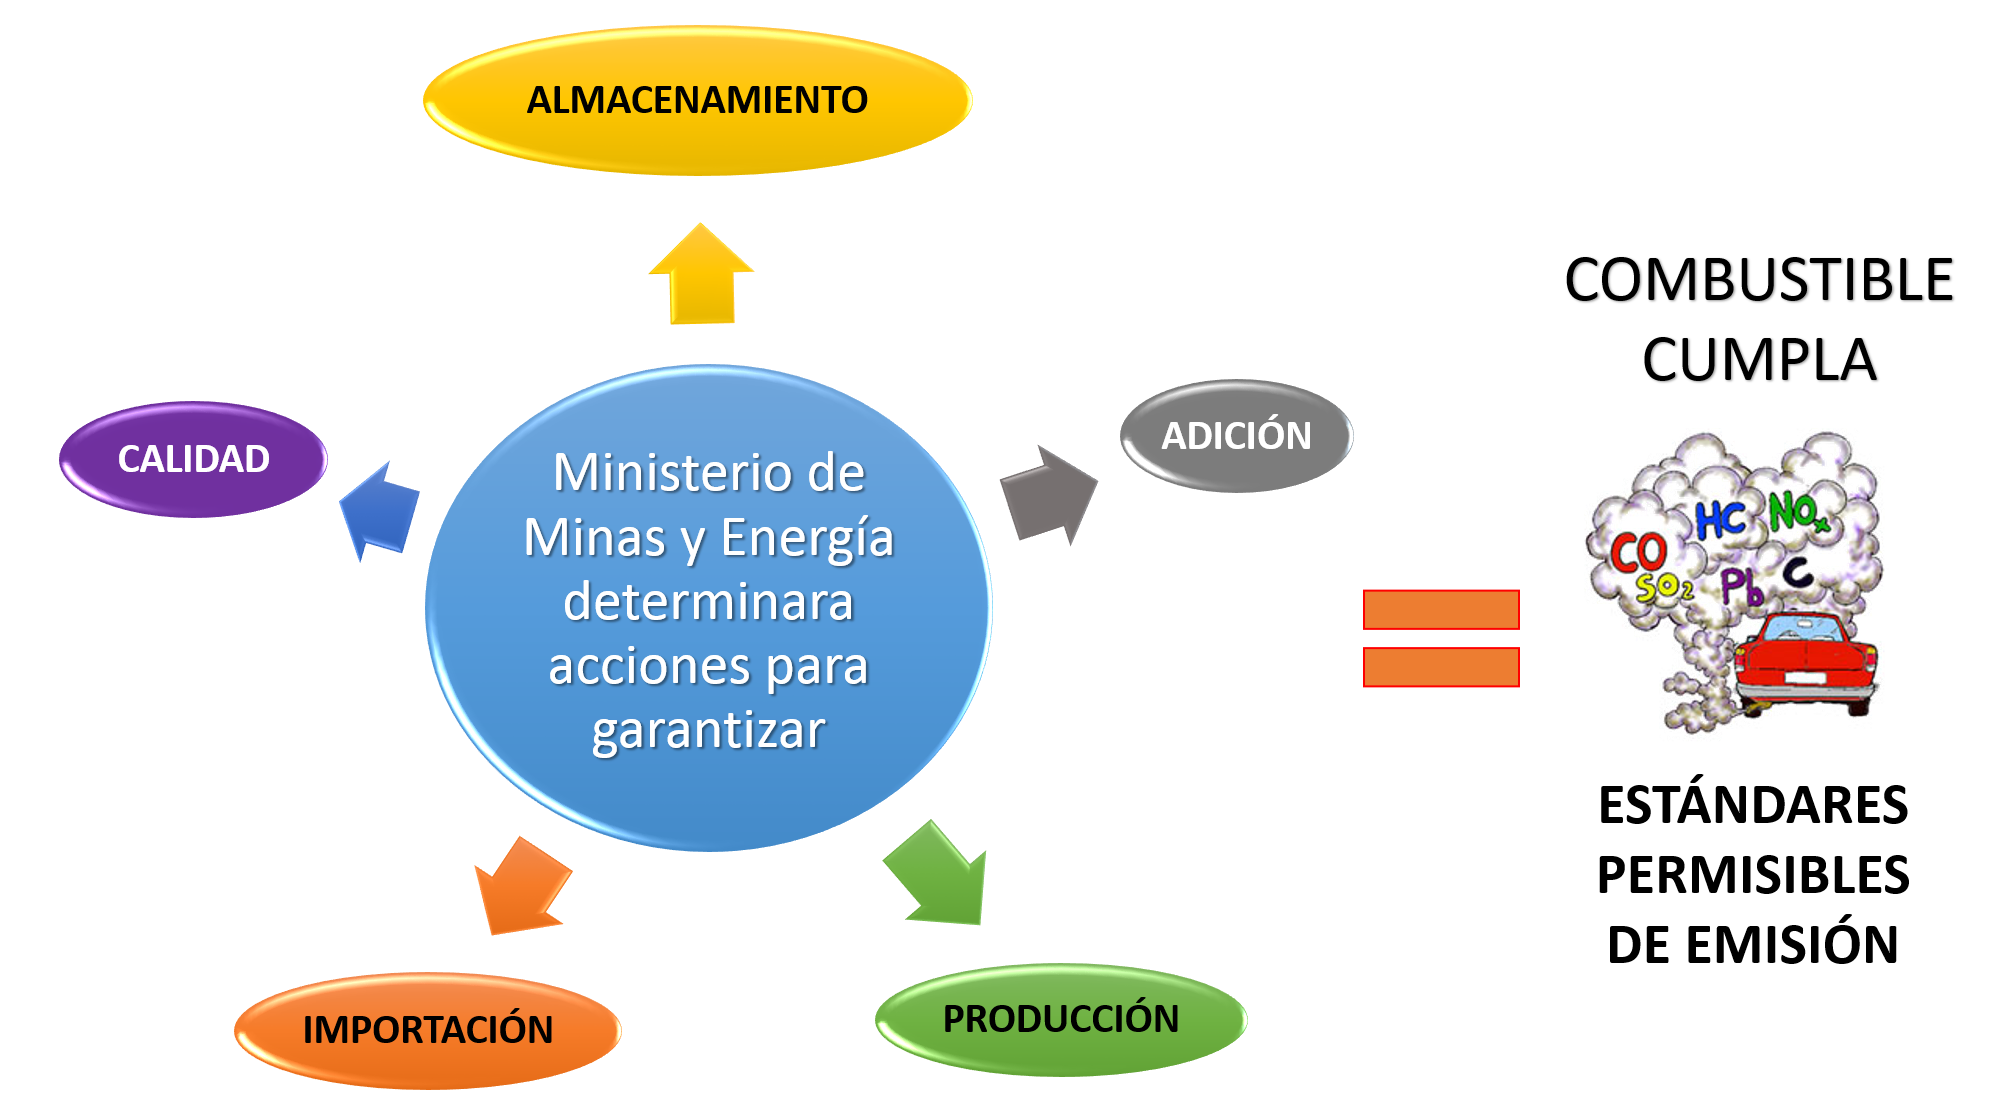 Almacenamiento, calidad, importación, producción, adición, ministerio de minas y energi determinara accions para garantizar cumbistible cumpla estandares permisibles de emisión